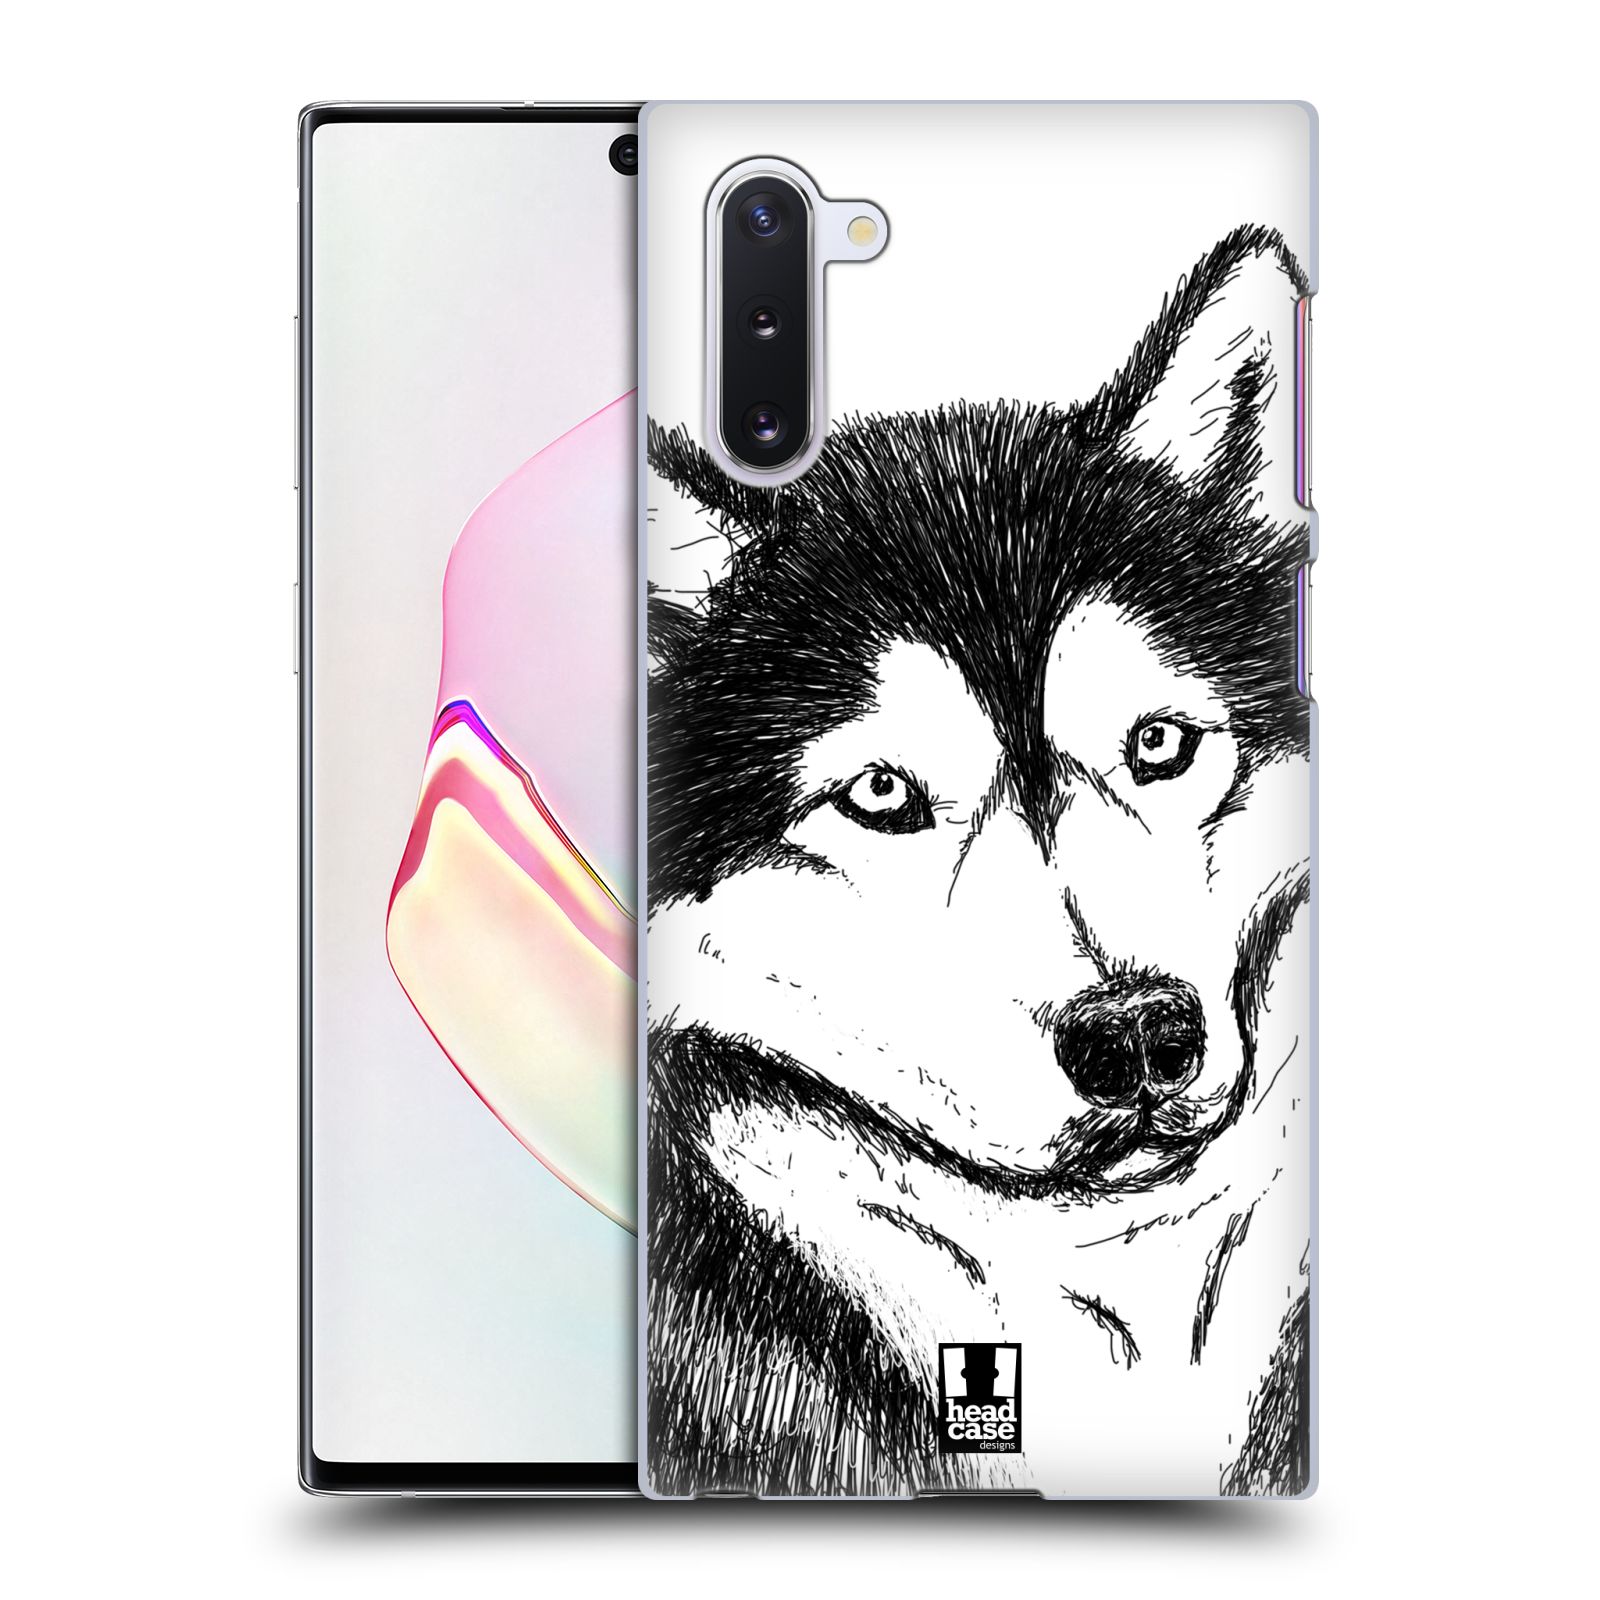 Pouzdro na mobil Samsung Galaxy Note 10 - HEAD CASE - vzor Kreslená zvířátka černá a bílá pes husky